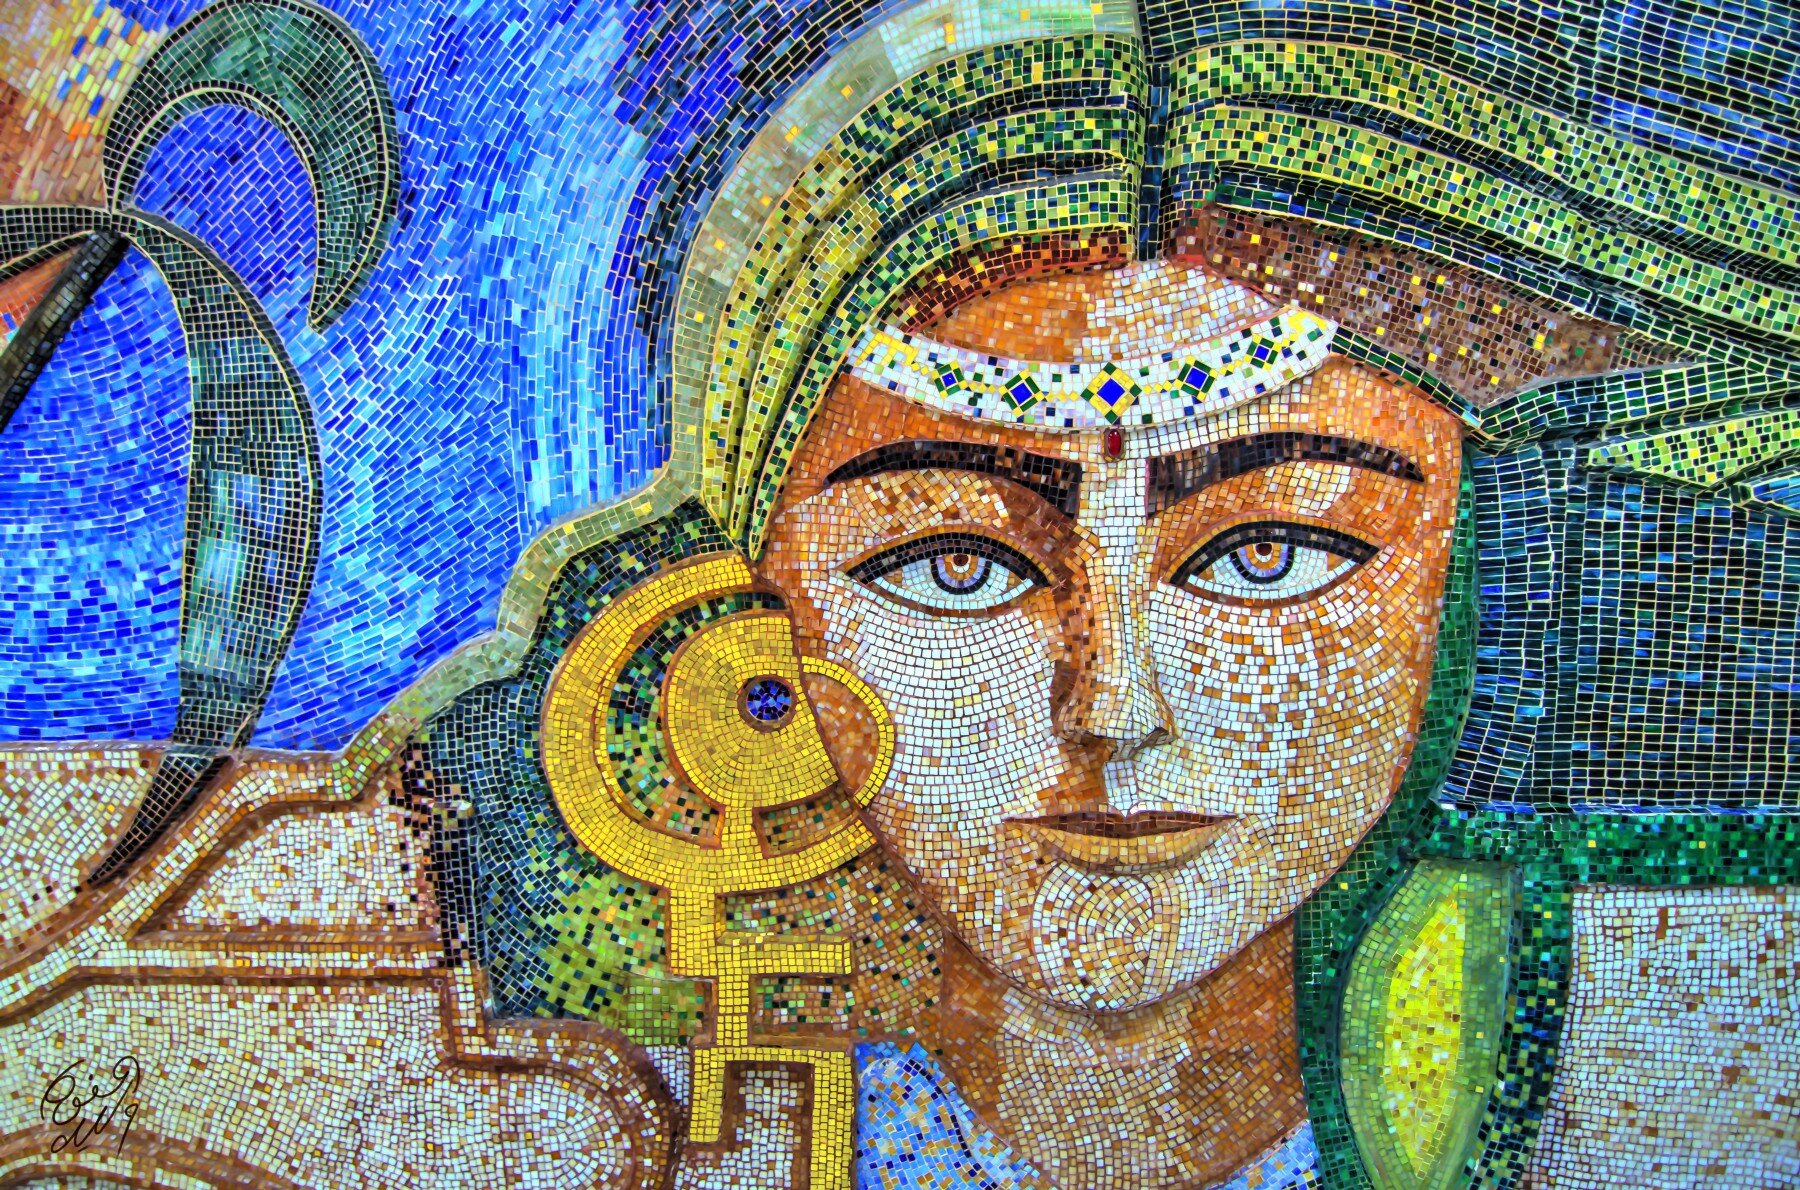 لوحة جدارية من الفسيفساء تصوير وليد محفوظ (فليكر/وليد محفوظ)